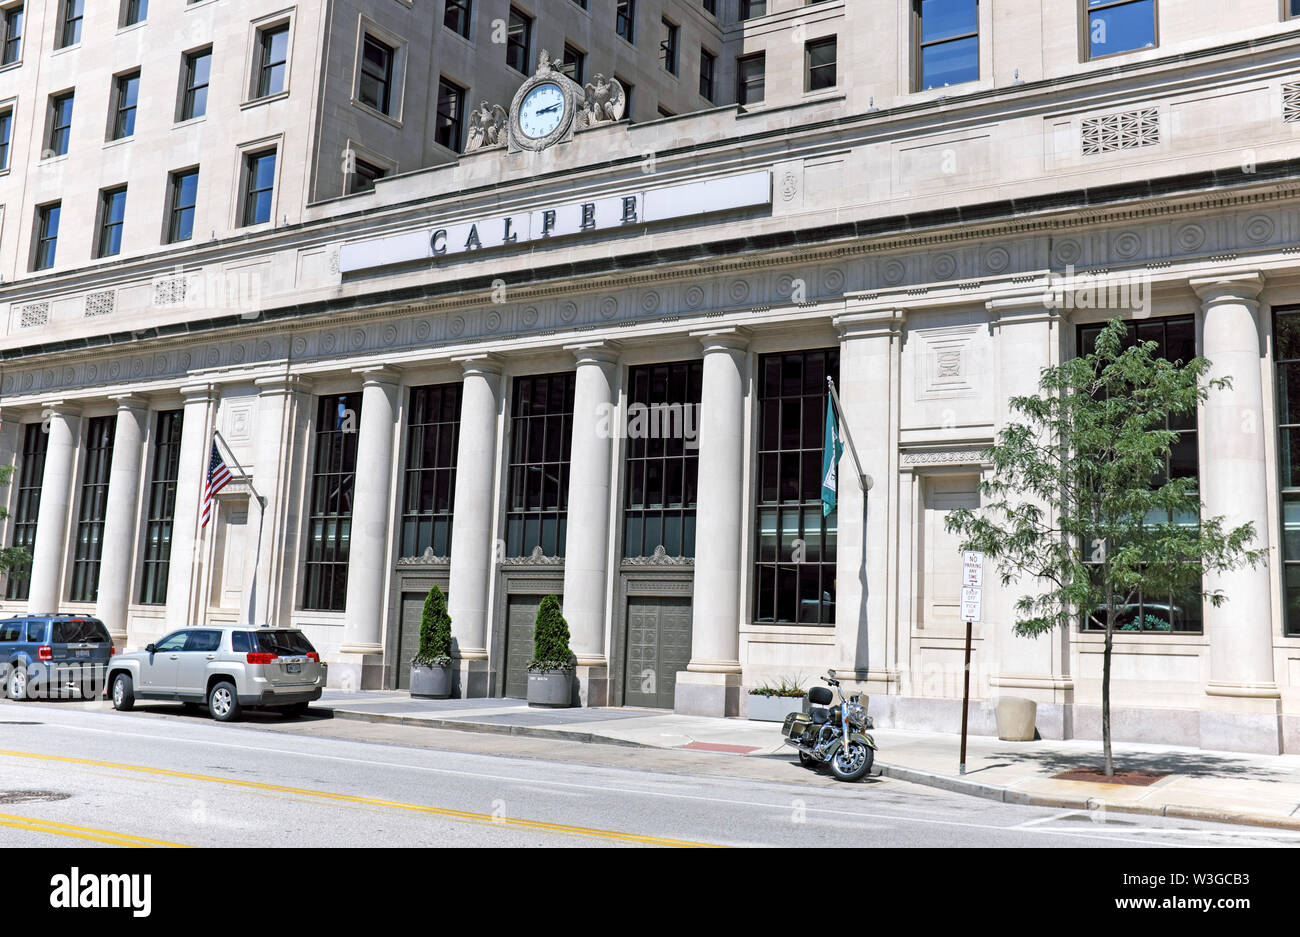 La fachada exterior de Beaux Arts del histórico edificio Calfee en E. 6th en el centro de Cleveland, Ohio, es el hogar de Calfee, Halter y el bufete de abogados Griswold. Foto de stock